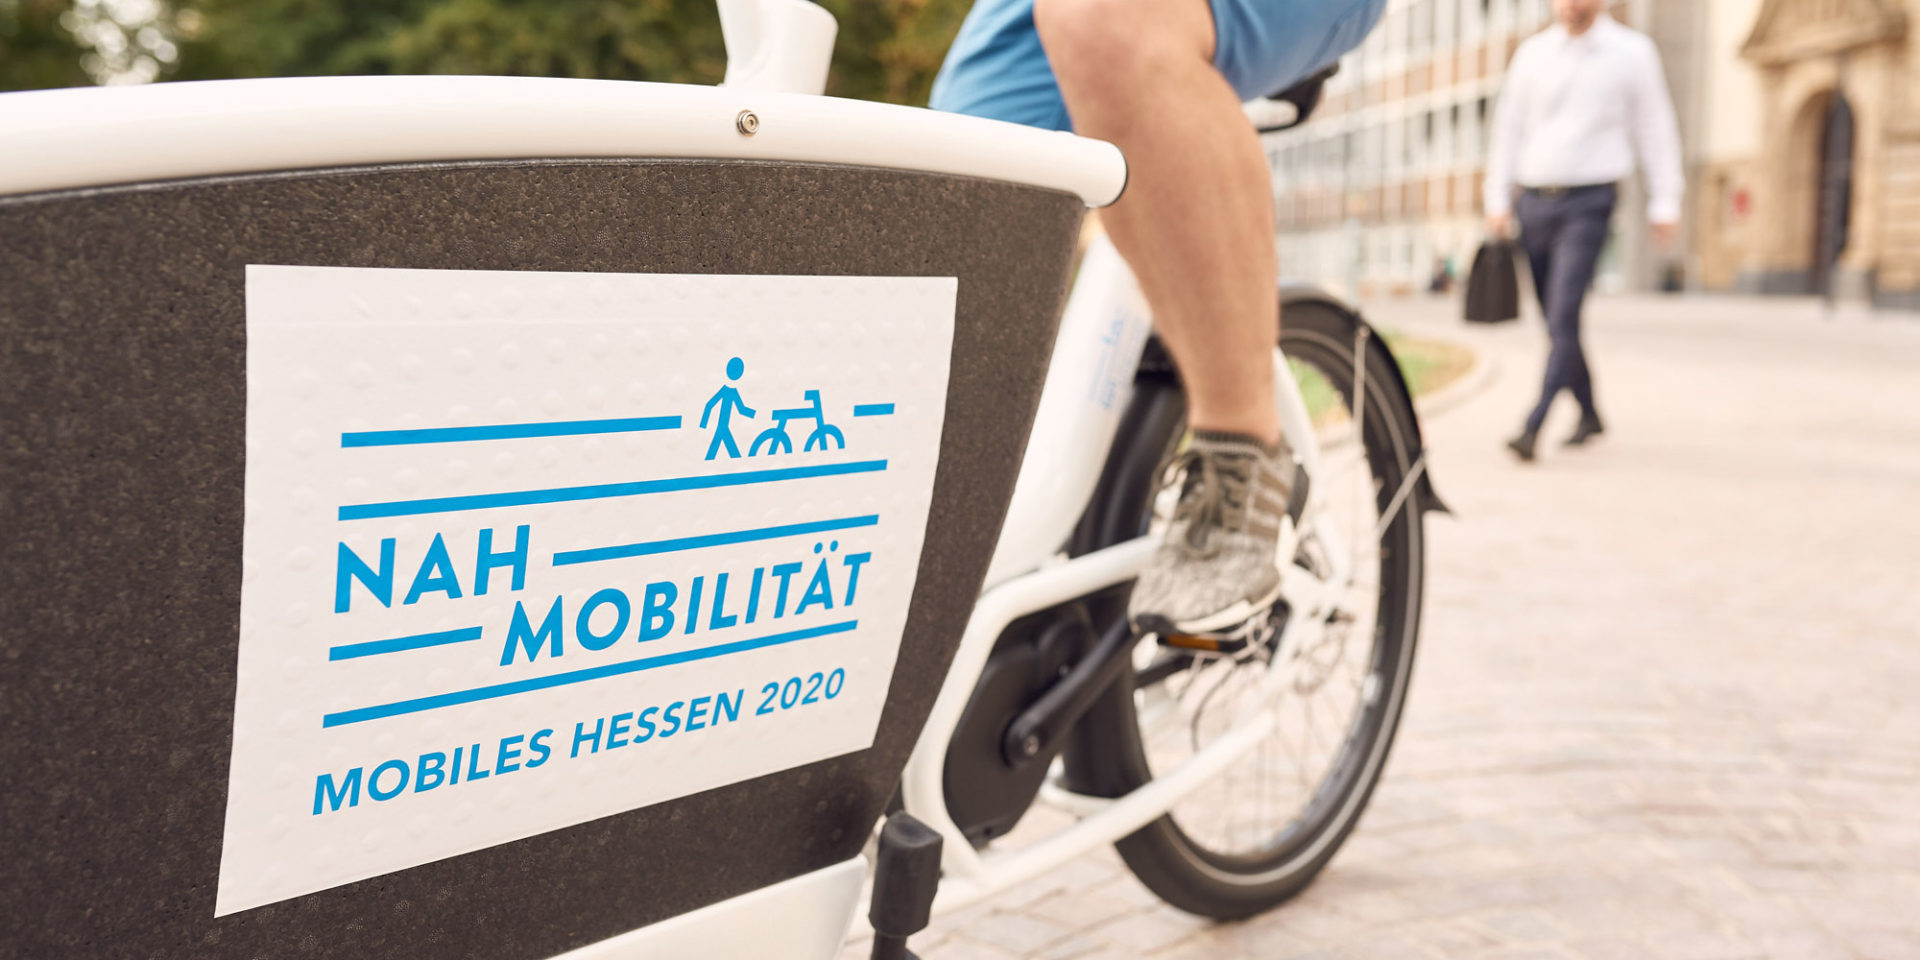 Ein Mann sitzt auf einem Fahrrad, welches die Aufschrift "Nah Mobilität Mobiles Hessen 2020" trägt.